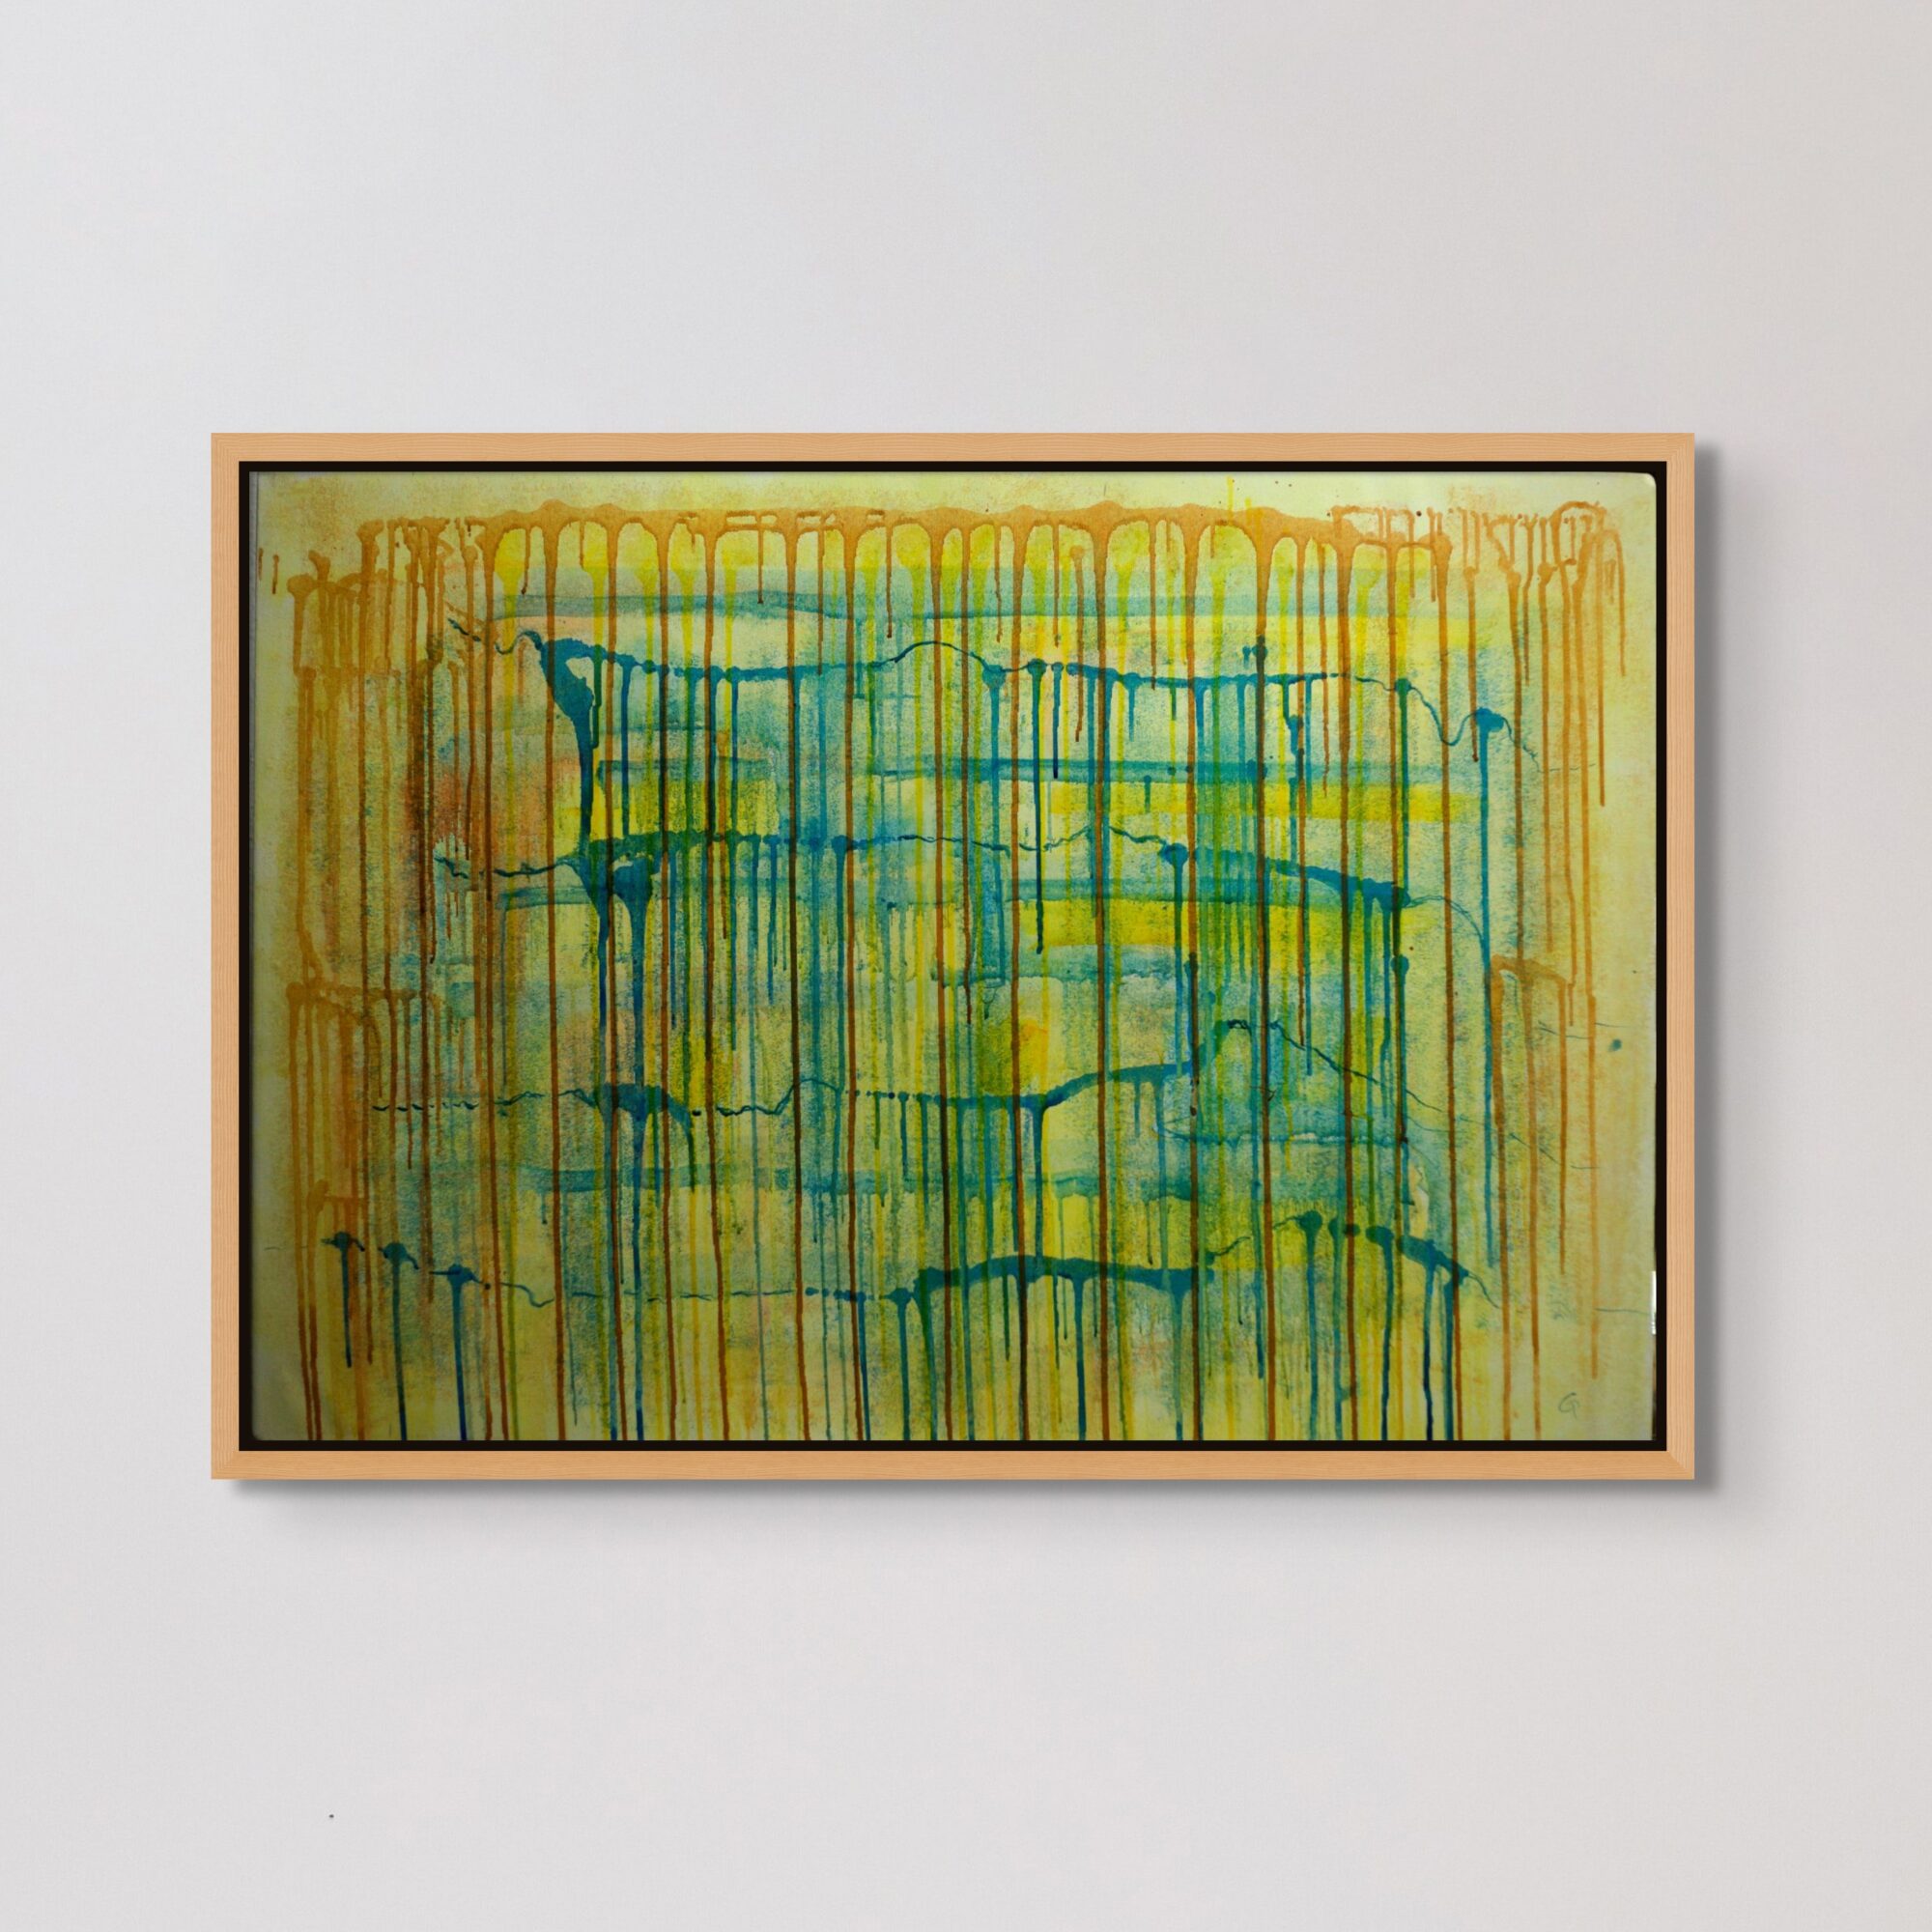 Studio astratto in verde e giallo-Drip2- 70x100cm